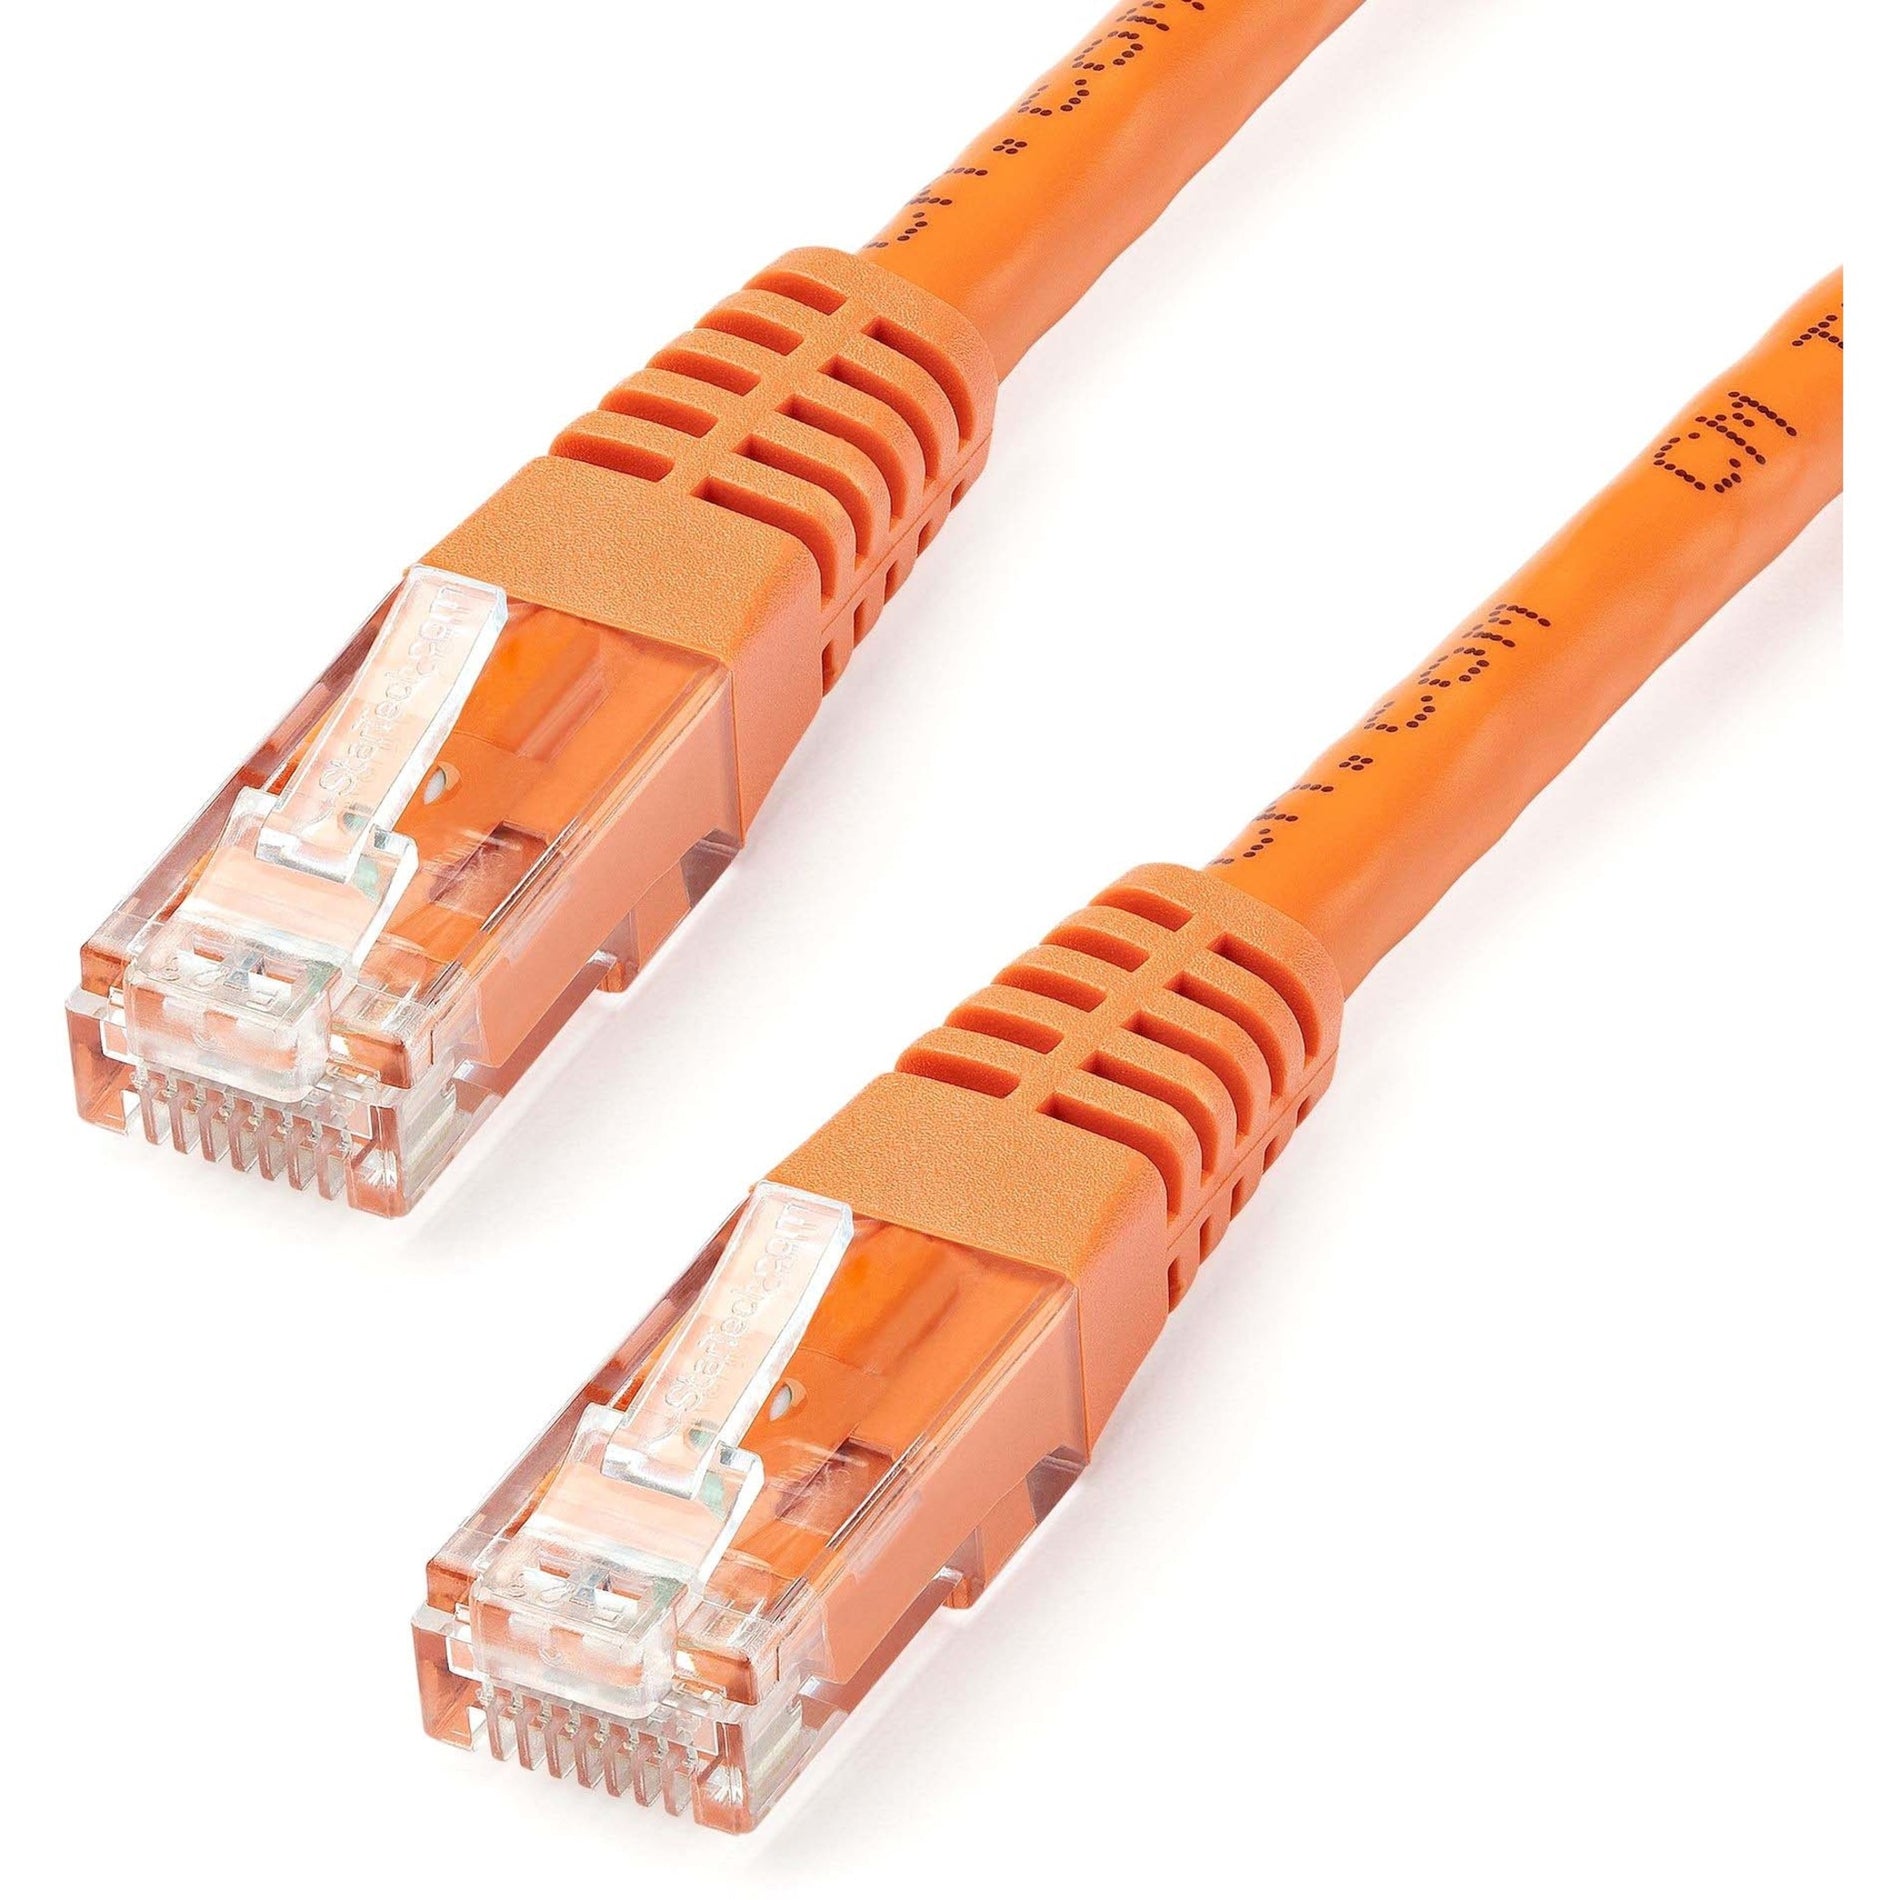 StarTech.com C6PATCH35OR 35ft Orange Cat6 UTP Patch Cable ETL Verified, Gigabit Ethernet Network Cord